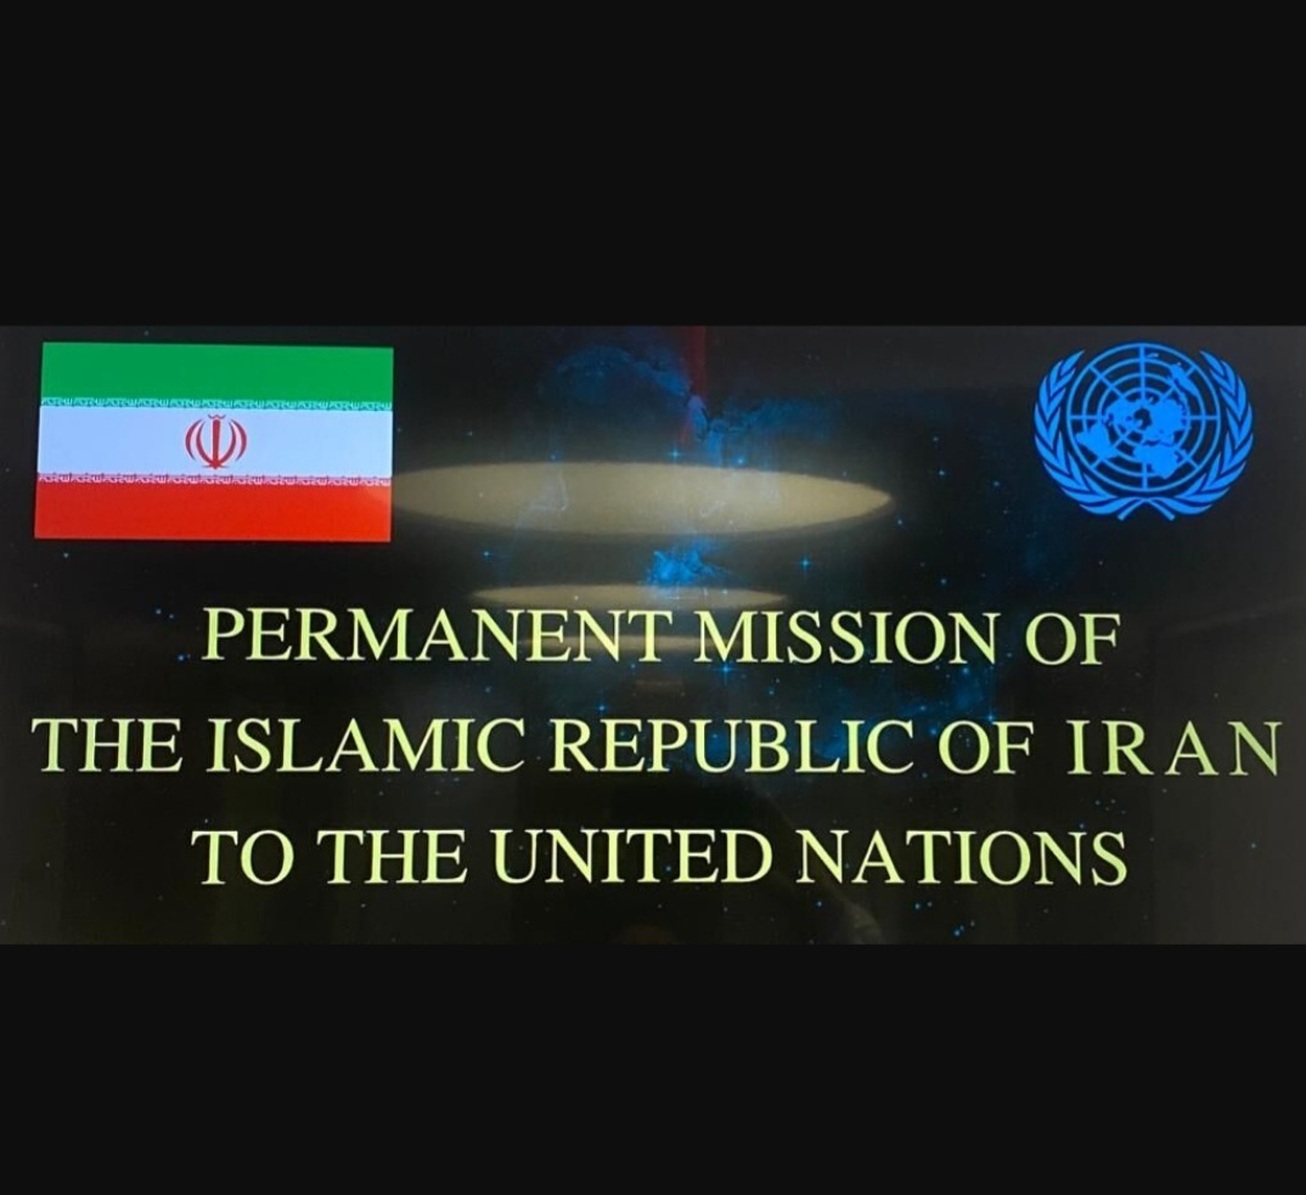 فضاسازی درباره ۶ میلیارد دلار پول آزاد شده تهران  ایران ادعای واشنگتن پست را رد کرد